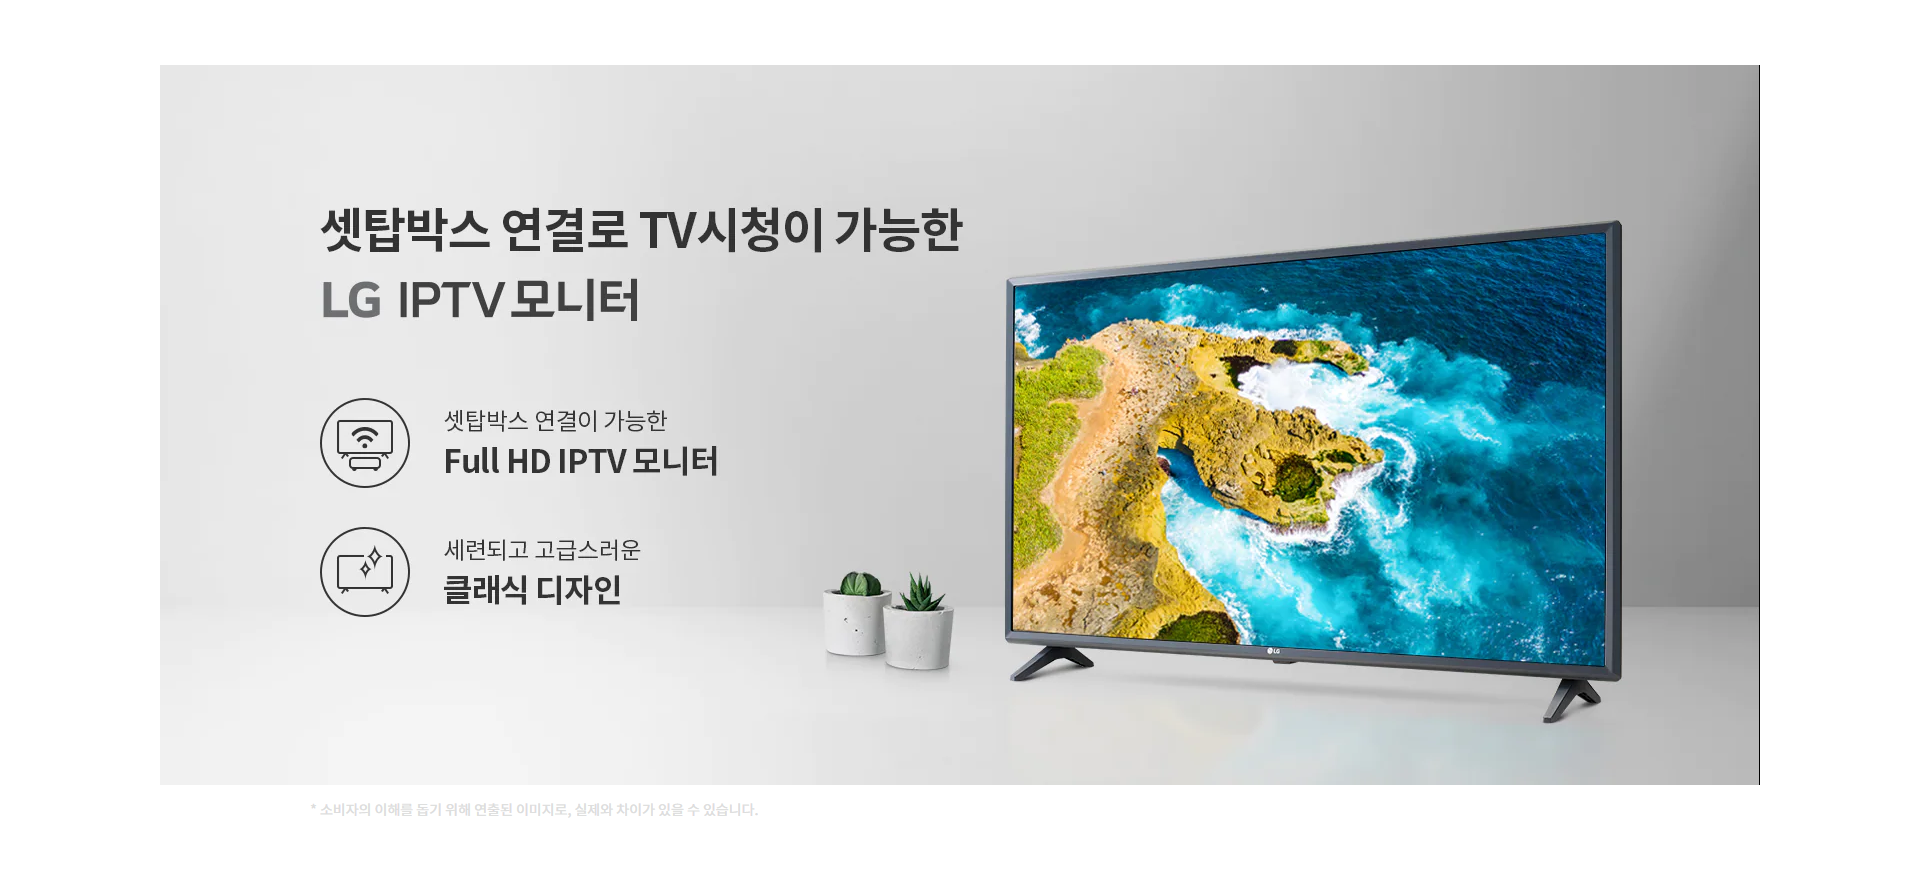 32MQ510S 43MQ520S 특판 LG IPTV 32인치 43인치 모니터 TV 추천